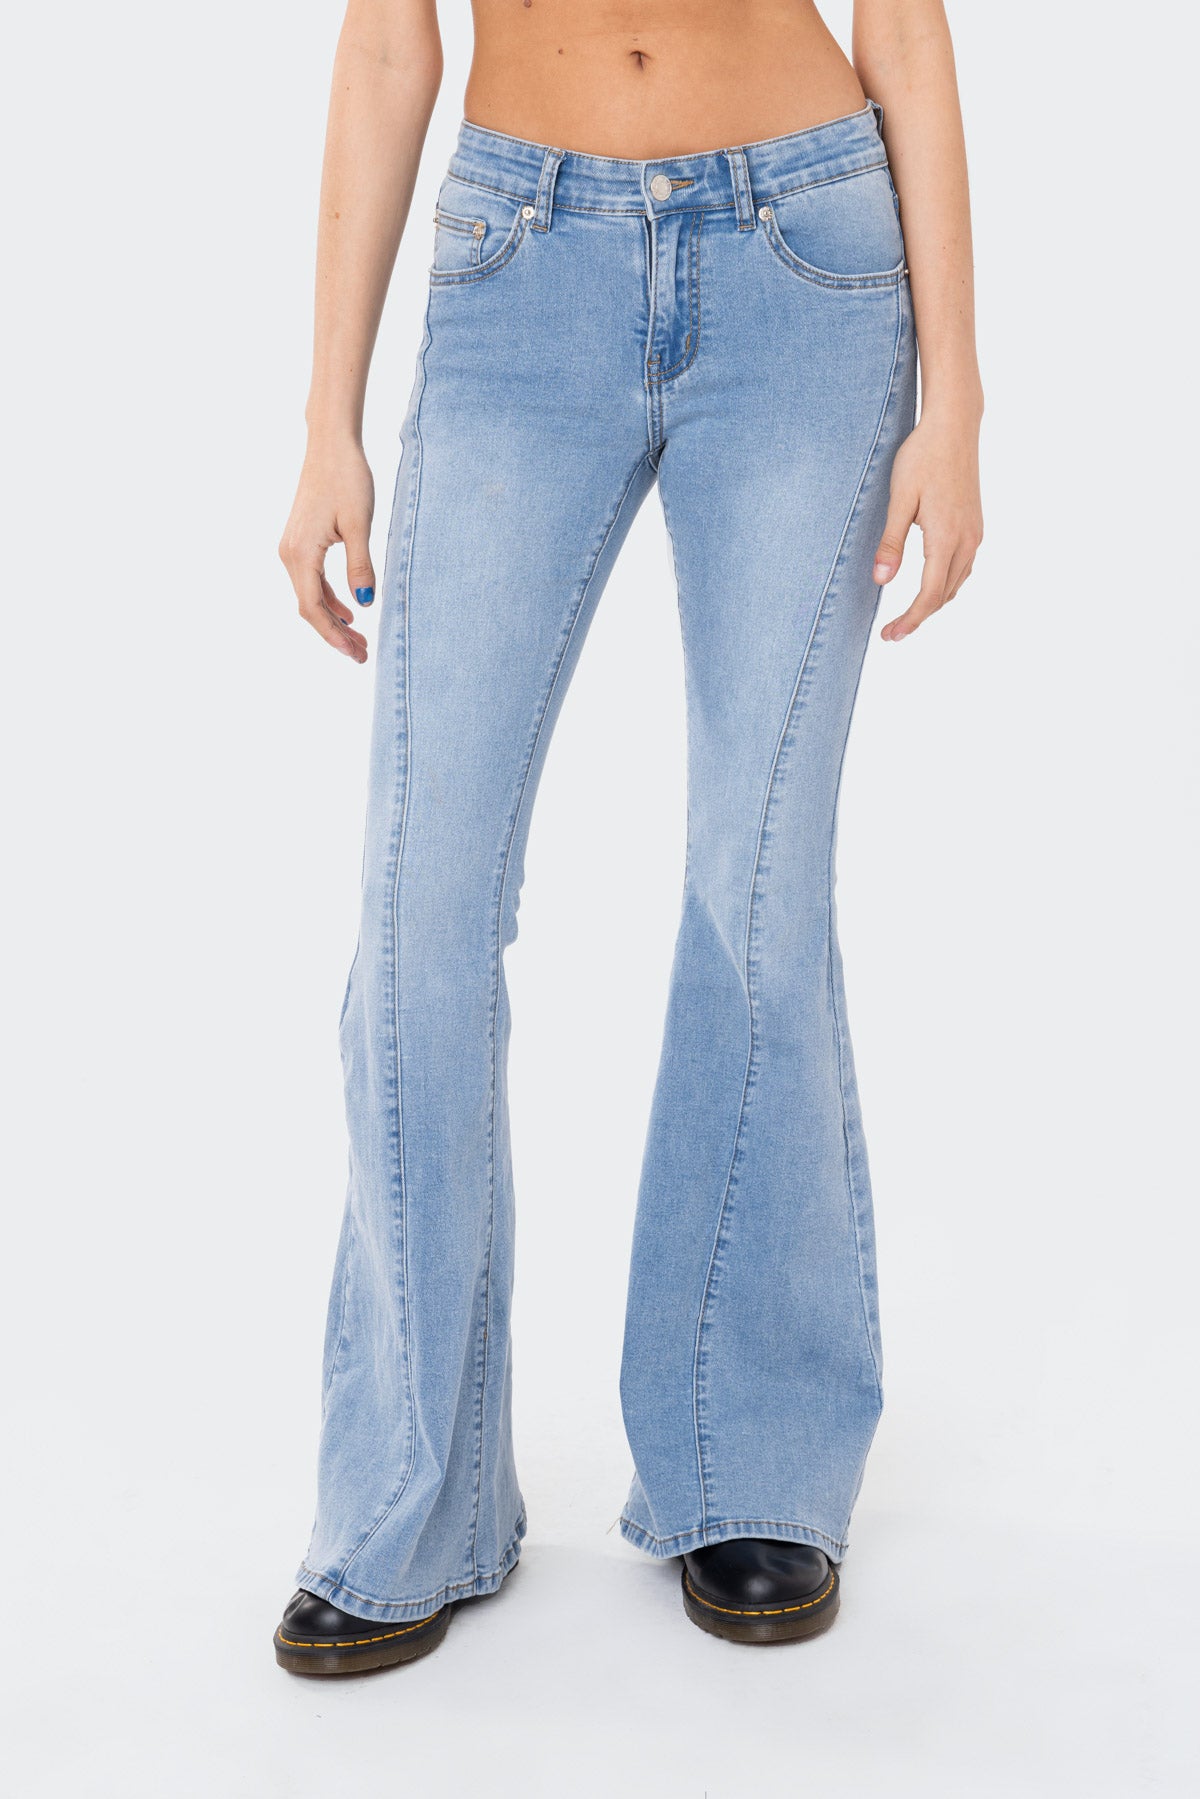 Rhapsody Low-Rise Flared Jeans